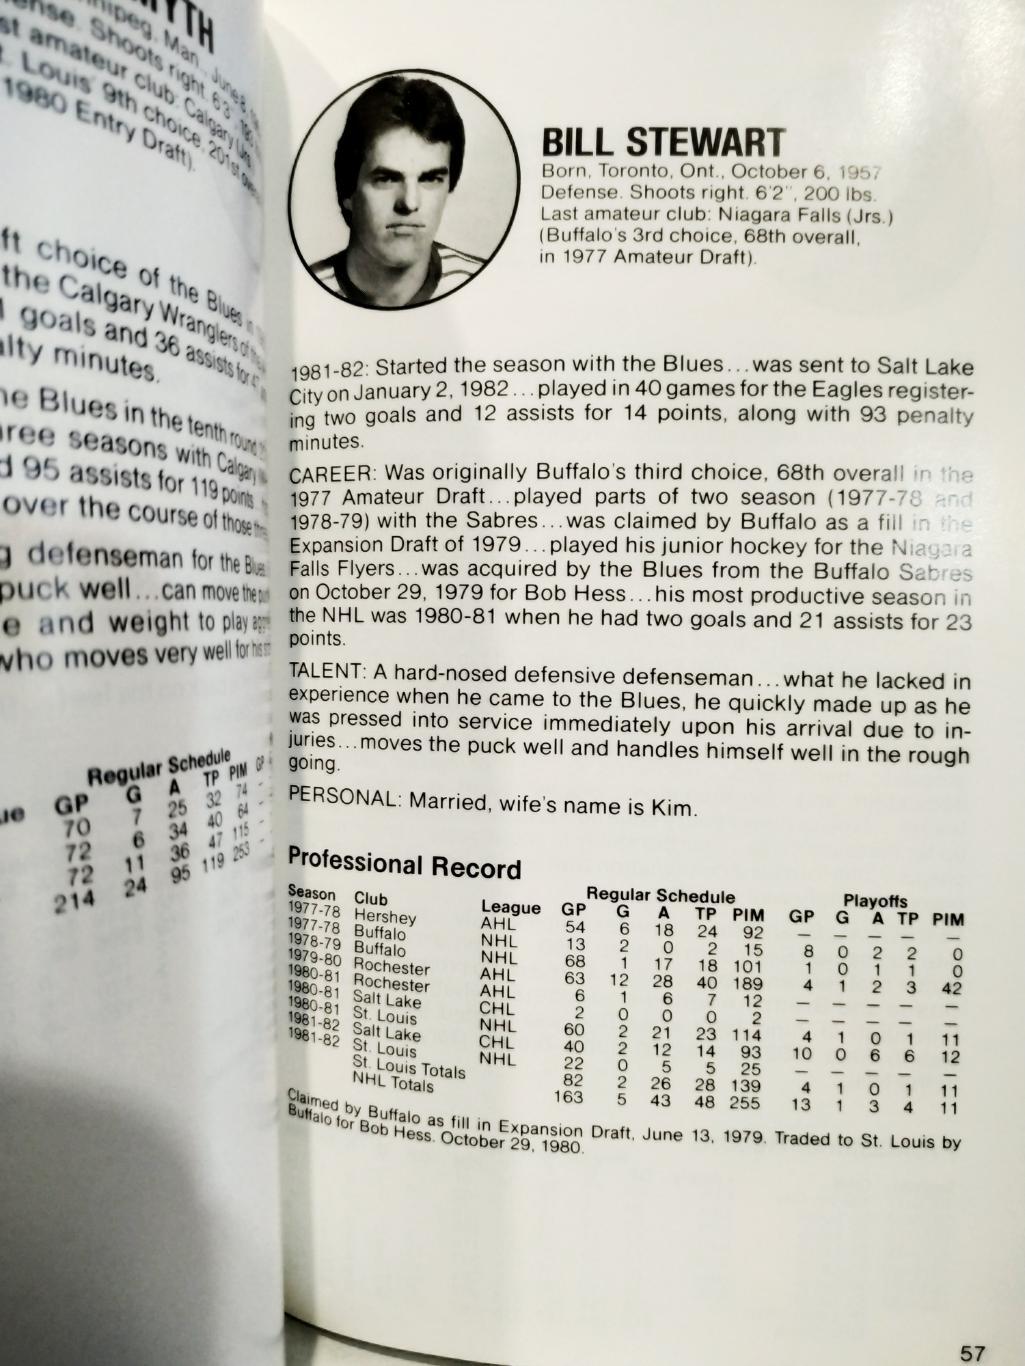 ХОККЕЙ СПРАВОЧНИК ЕЖЕГОДНИК НХЛ СЭНТ ЛУИС 1982-83 ST. LOUIS BLUES MEDIA GUIDE 4